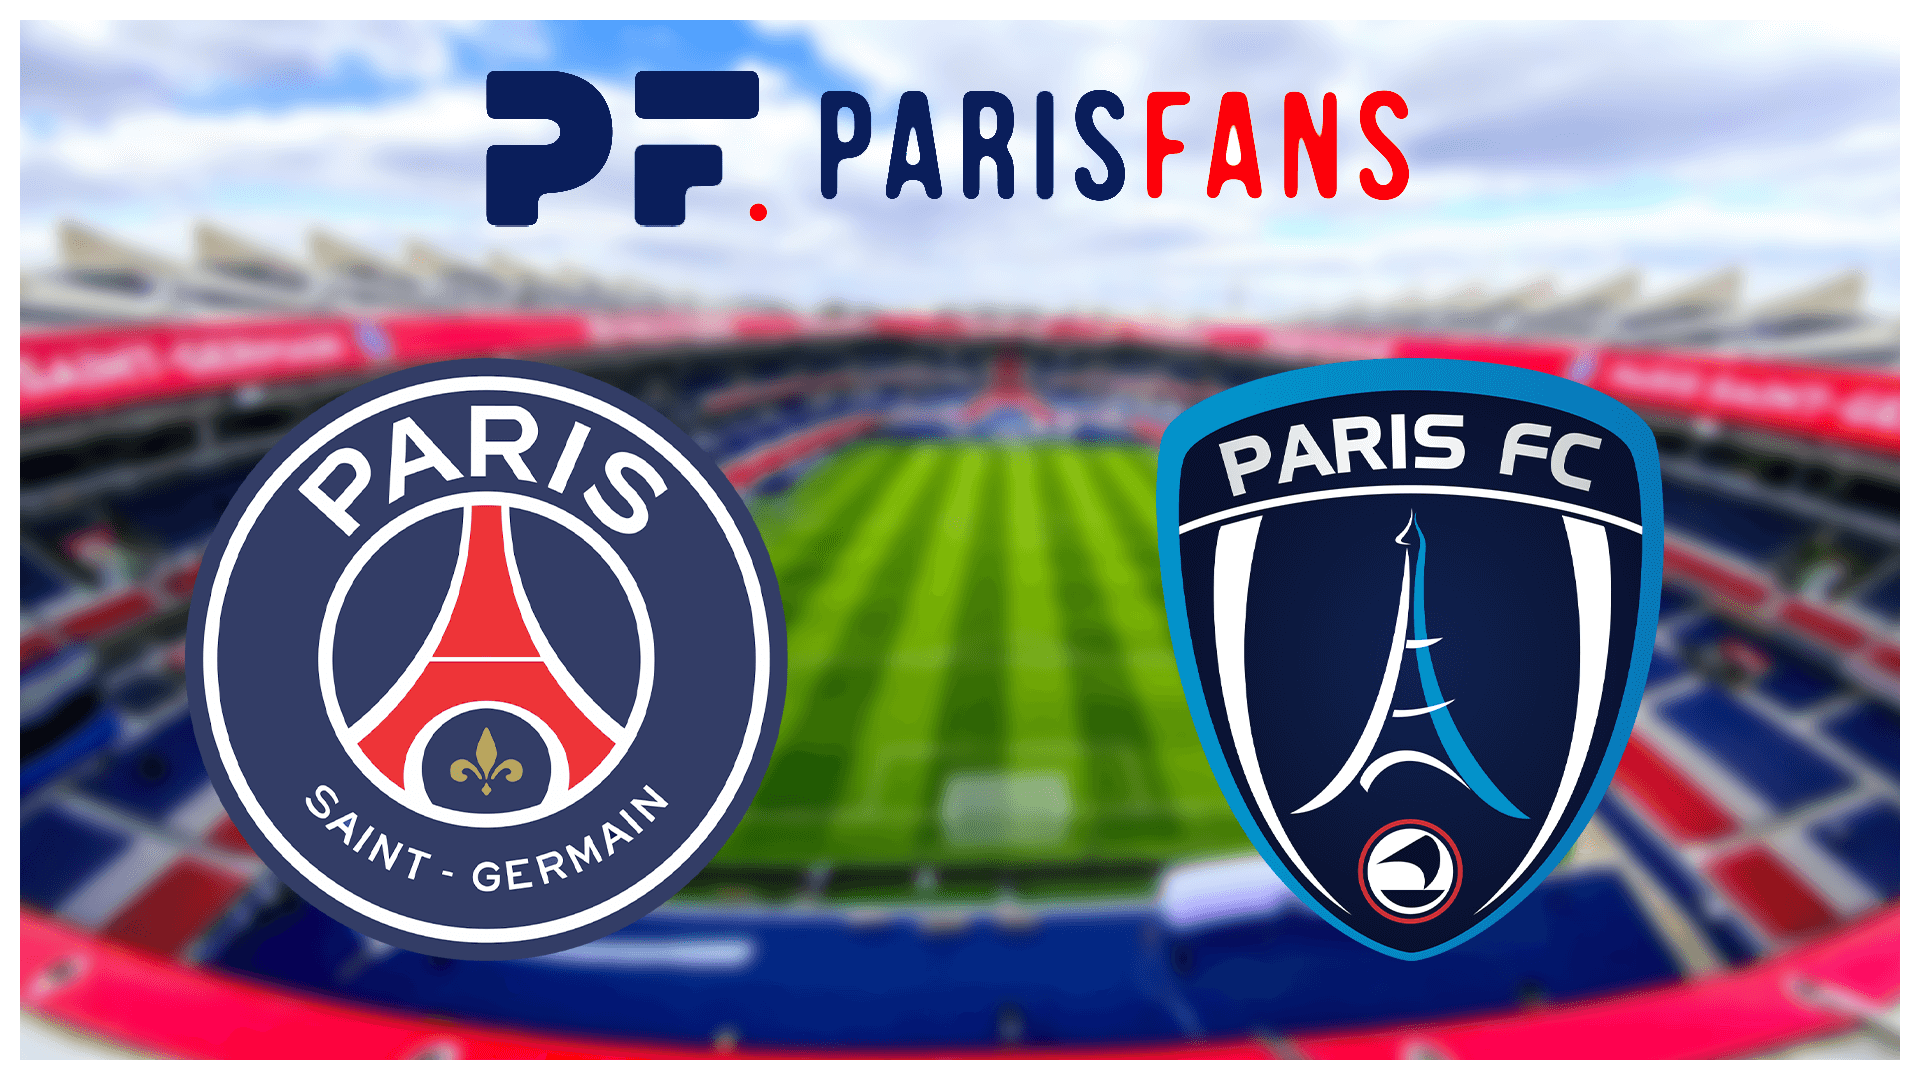 PSG/Paris FC (2-1) - Une reprise réussie avec les Titis, les tops et flops